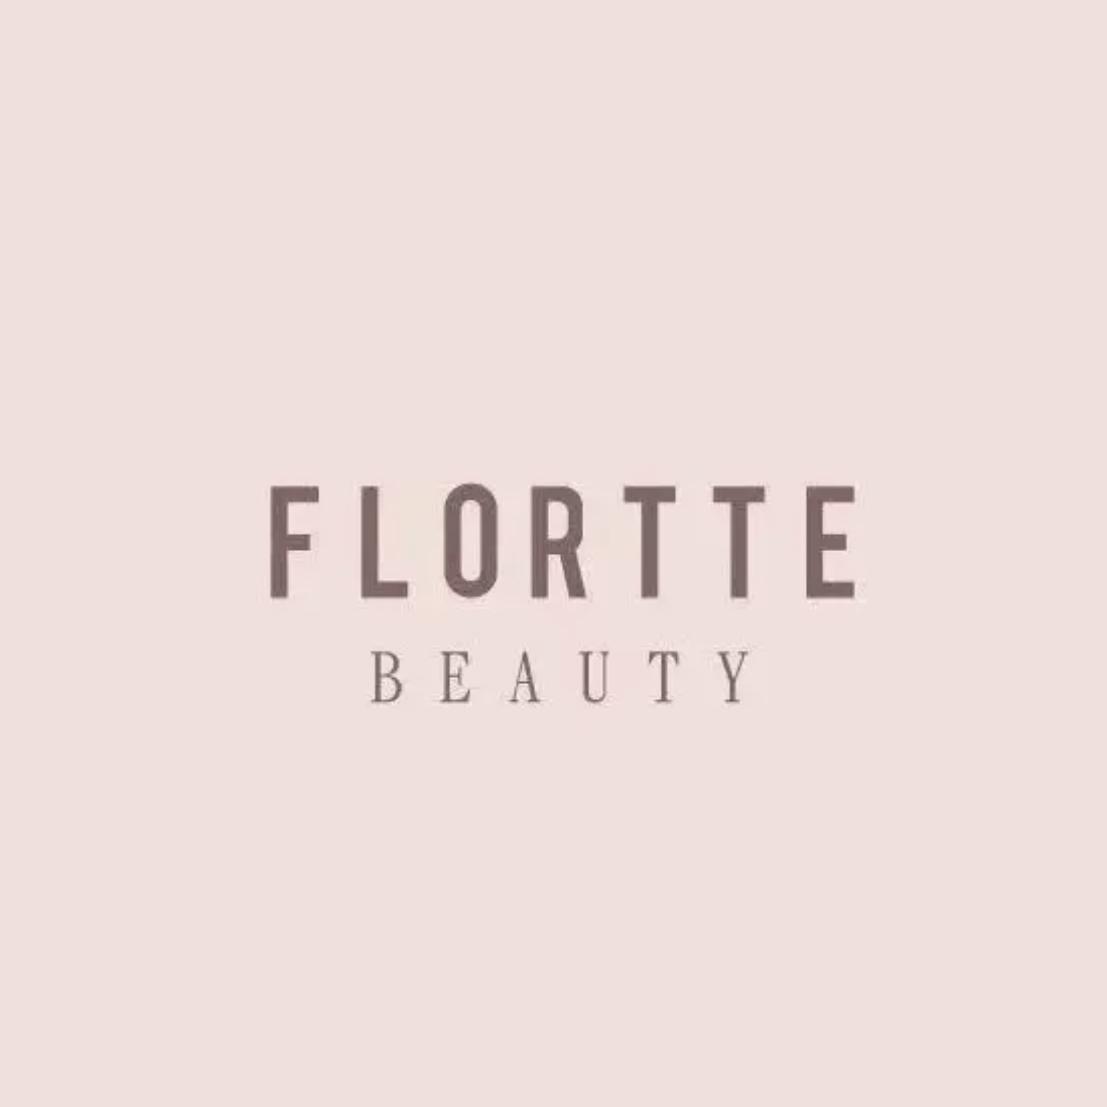 Flortte Beauty's images